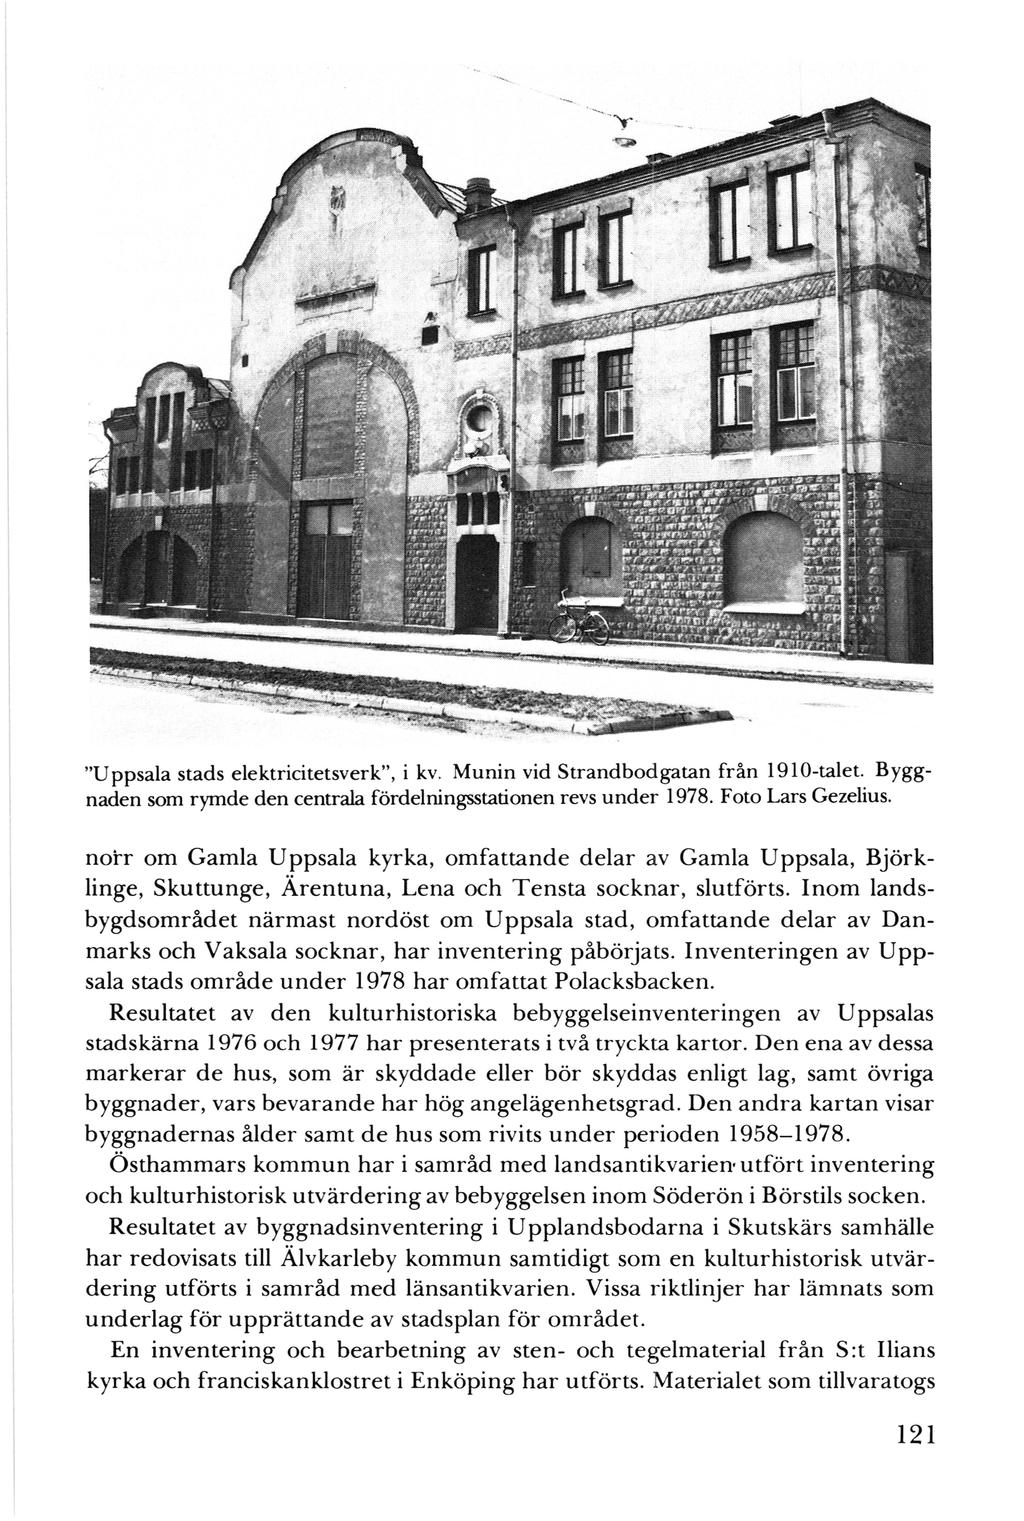 "Uppsala stads elektricitetsverk'', i kv. Munin vid Strandbodgatan från 1910-talet. Byggnaden som rymde den centrala fördelningsstationen revs under 1978. Foto Lars Gezelius.